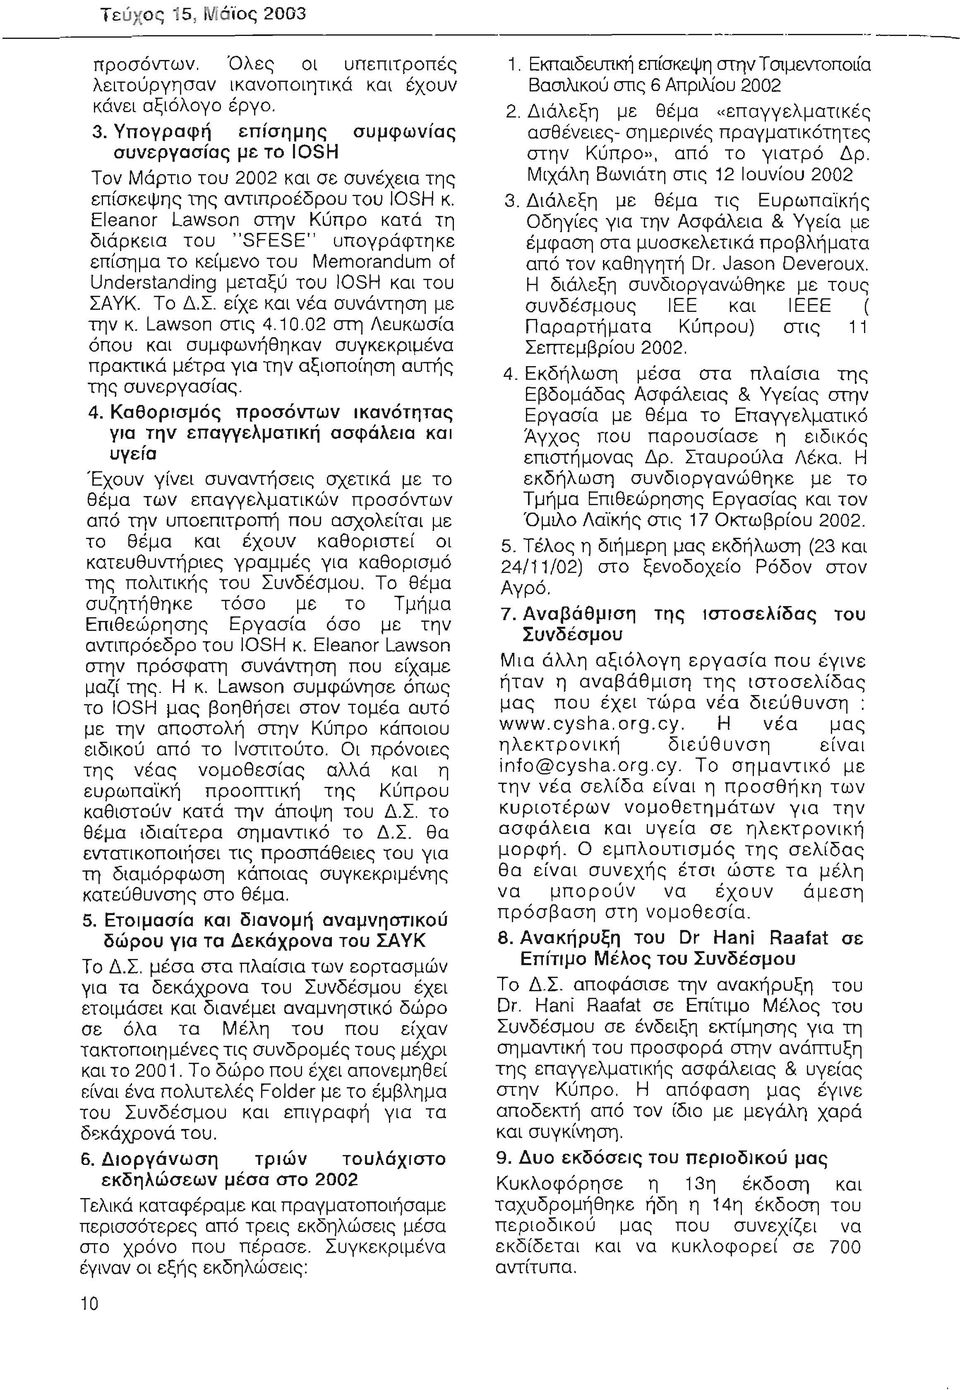 γπογραφή επίσημης συμφωνίας ασθένειες- σημερινές πραγματικότητες συνεργασίας με το IOSH στην Κύπρο", από το γιατρό Δρ, Μιχάλη Βωνιάτη στις 12 lουνίου 2002 3, Διάλεξη με θέμα τις Ευρωπα'ίκής Οδηγίες